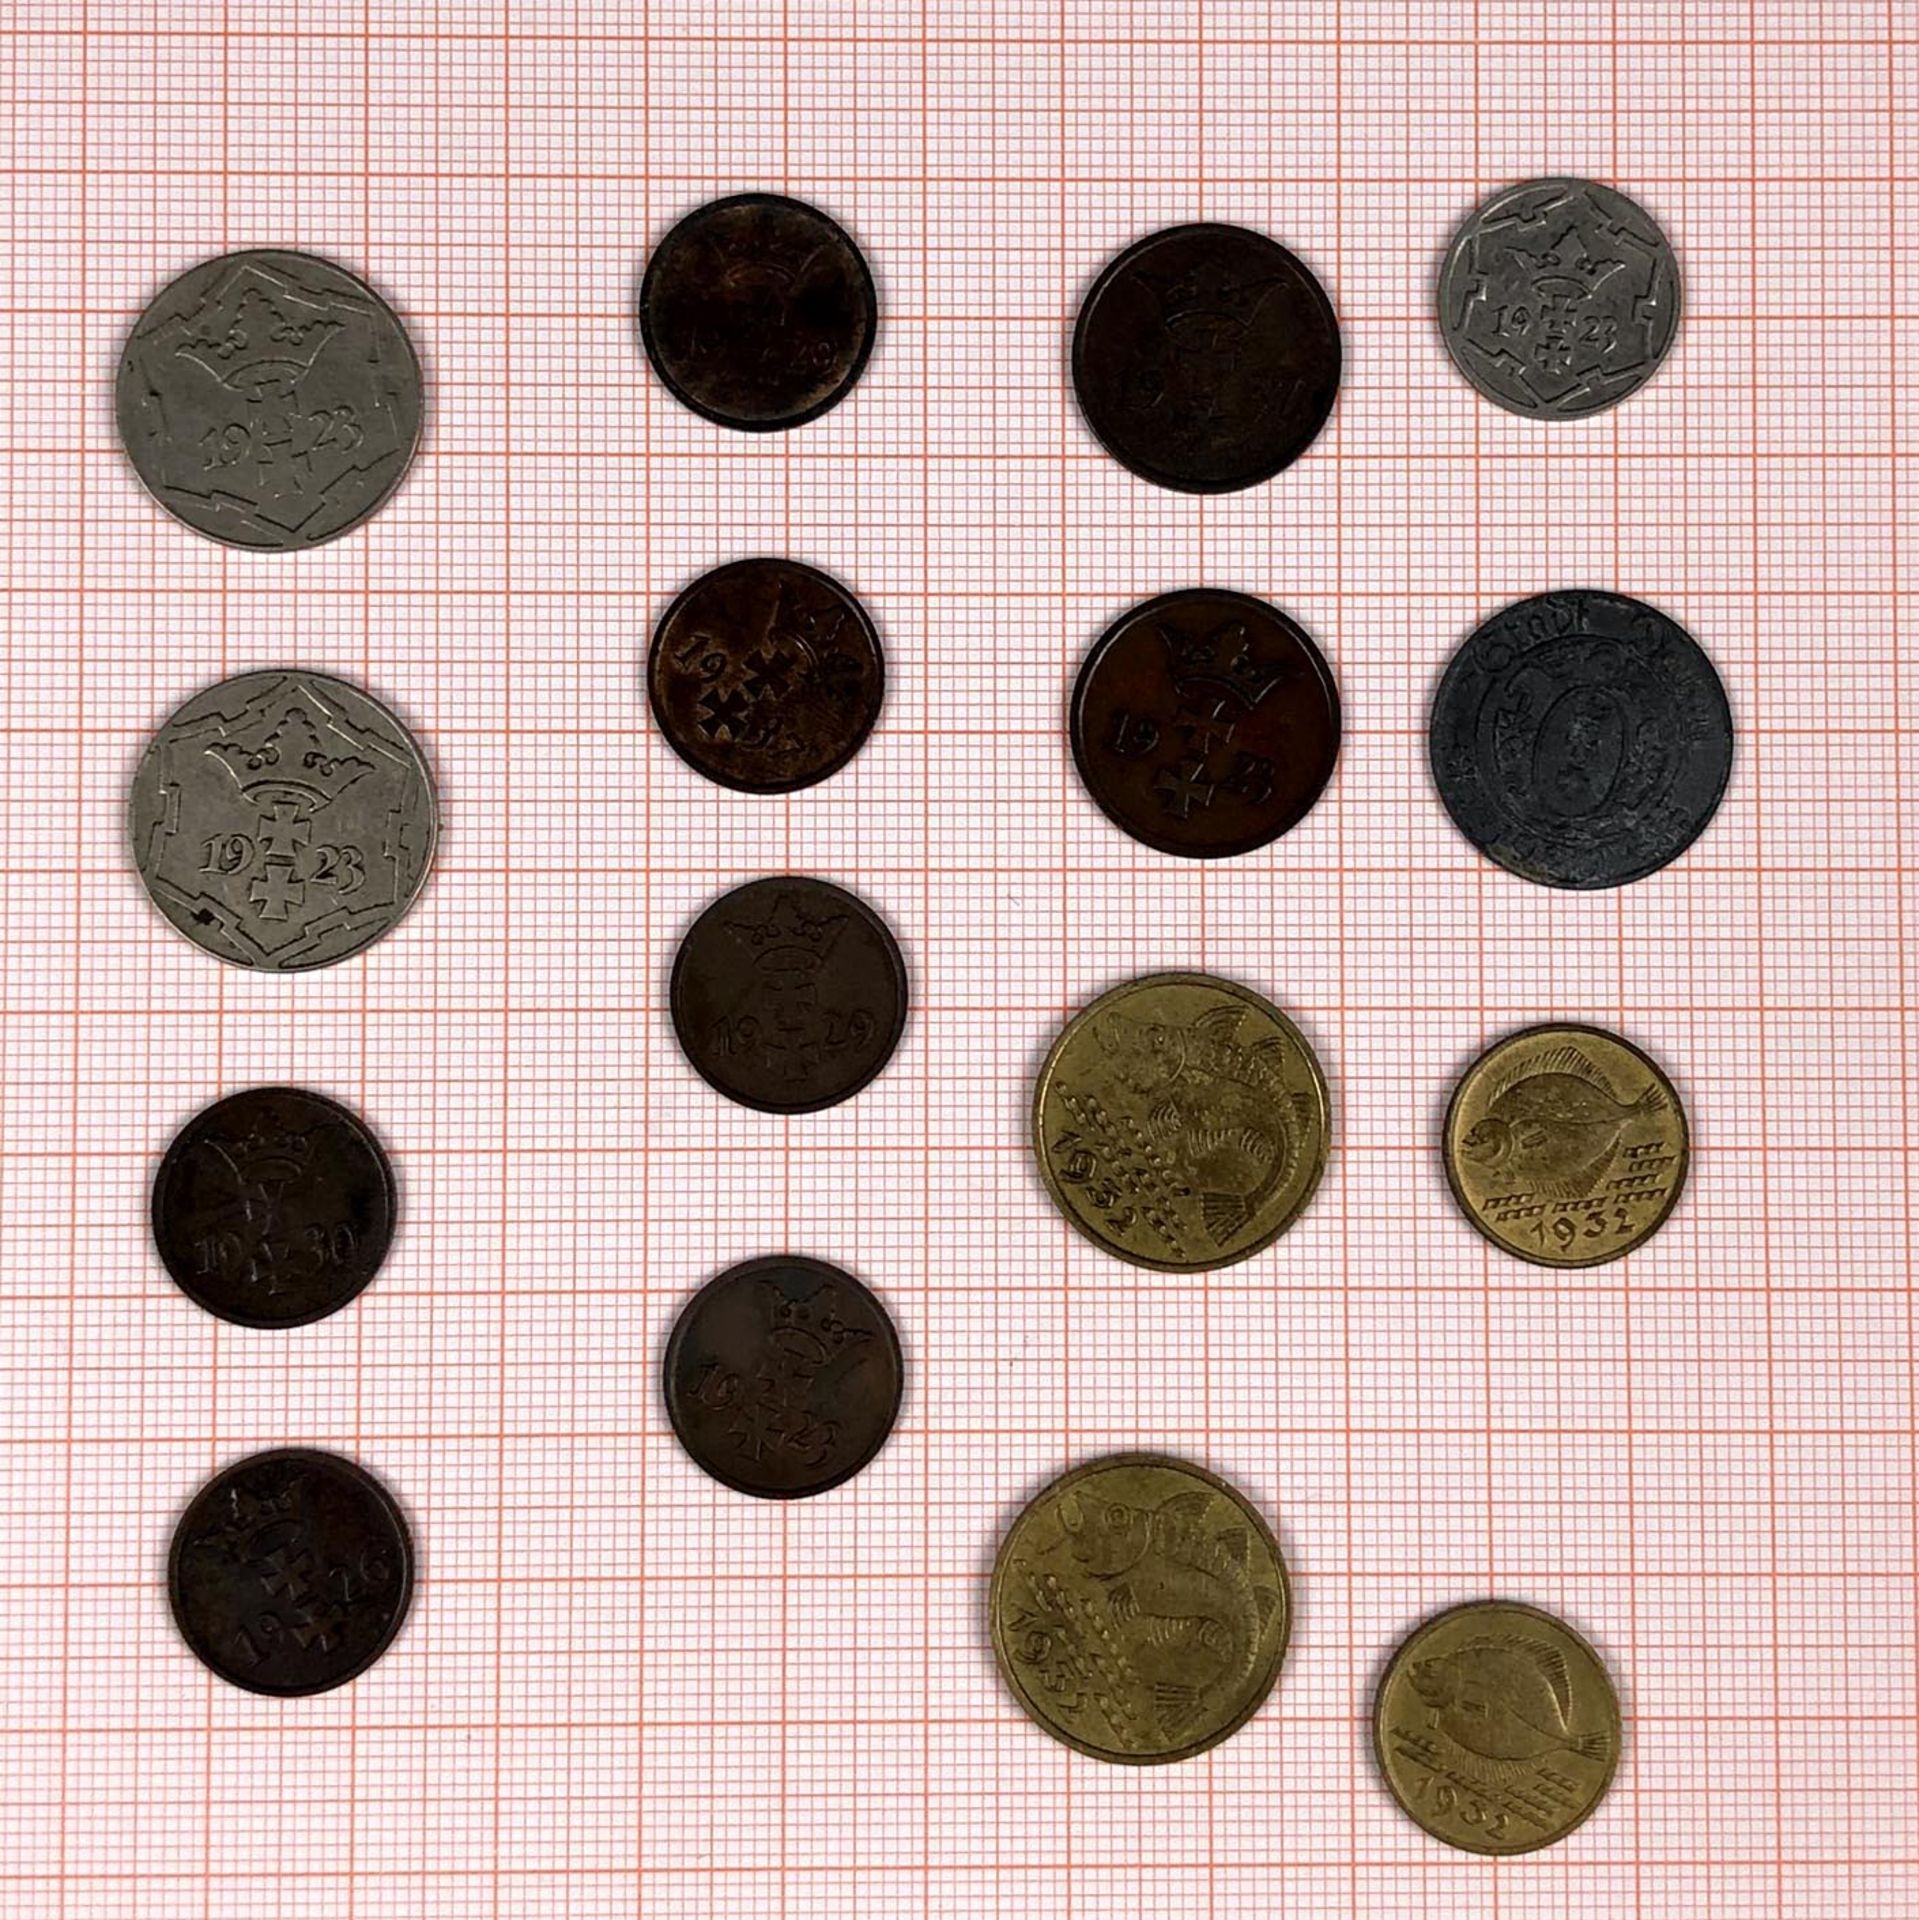 16 Münzen Danzig.Auch.6 mal 1 Pfennig. 1932, 1926 (2x), 1929, 1937, 1930.2 mal 2 Pfennig. 1923 und - Bild 3 aus 3